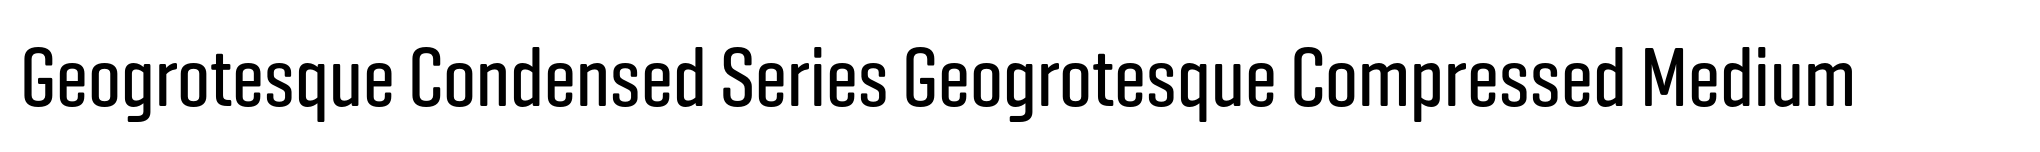 Geogrotesque Condensed Series Geogrotesque Compressed Medium image